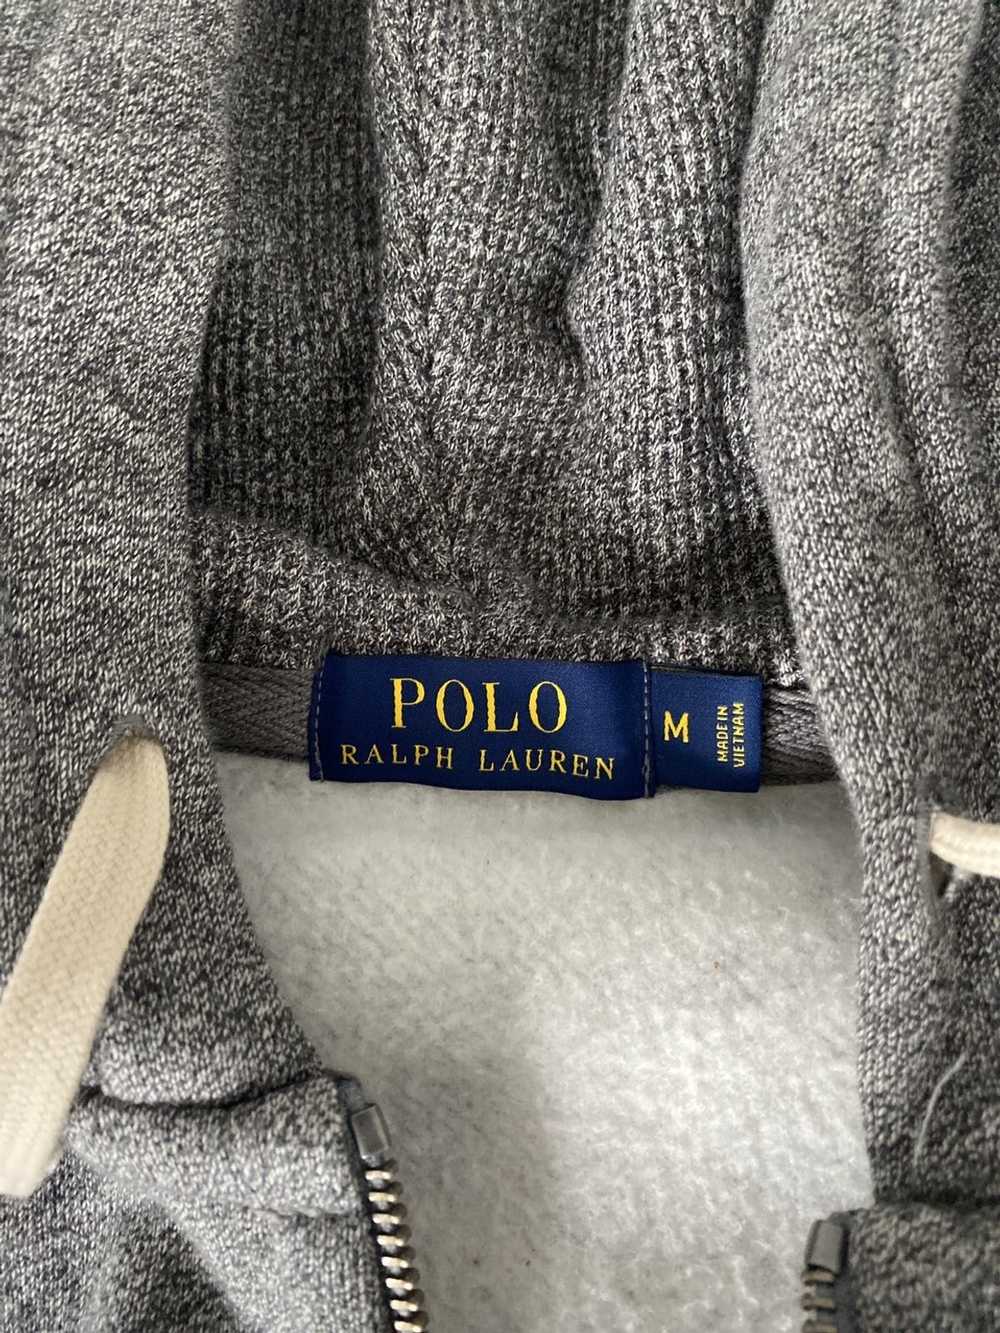 Polo Ralph Lauren Ralph Lauren Sweatshirt - image 2